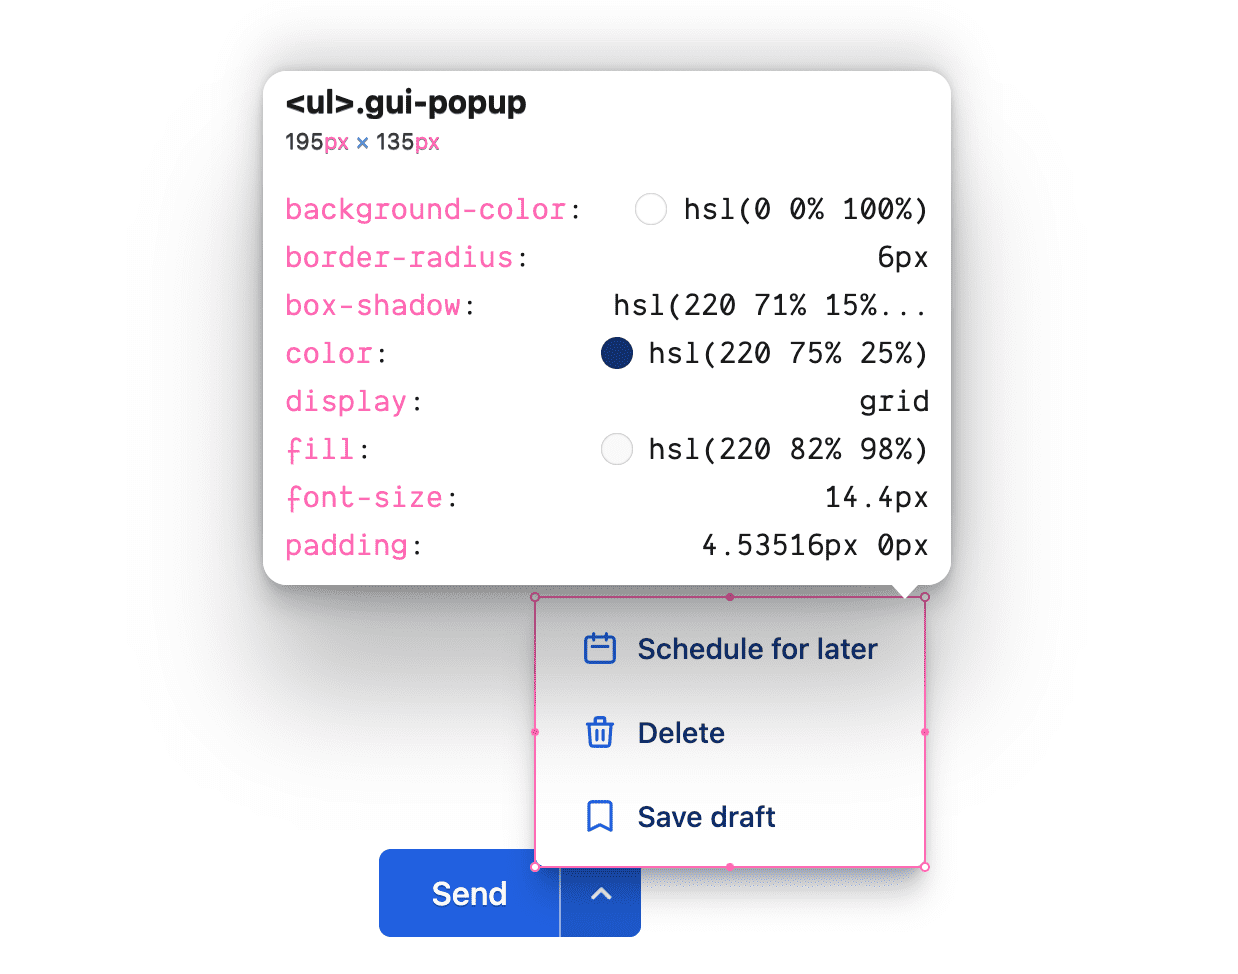 כלי הבדיקה שמציג את כללי ה-CSS של המחלקה gui-Pop